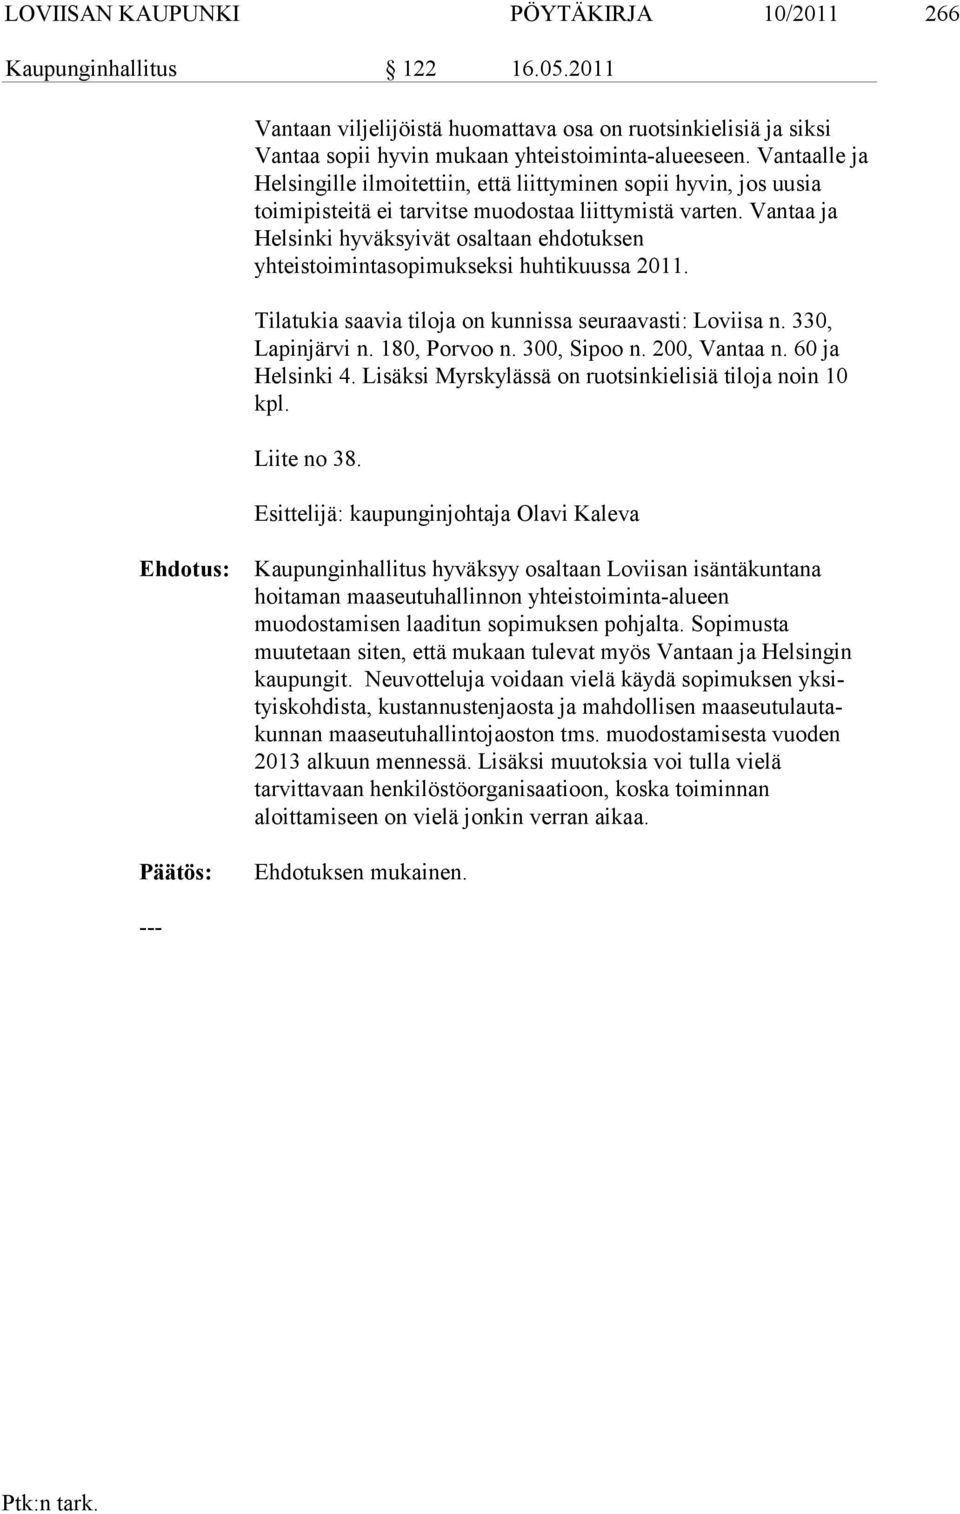 Van taa ja Helsinki hyväksyivät osaltaan ehdotuksen yhteistoimintasopimuksek si huhtikuussa 2011. Tilatukia saavia tiloja on kunnissa seuraavasti: Loviisa n. 330, Lapinjärvi n. 180, Porvoo n.